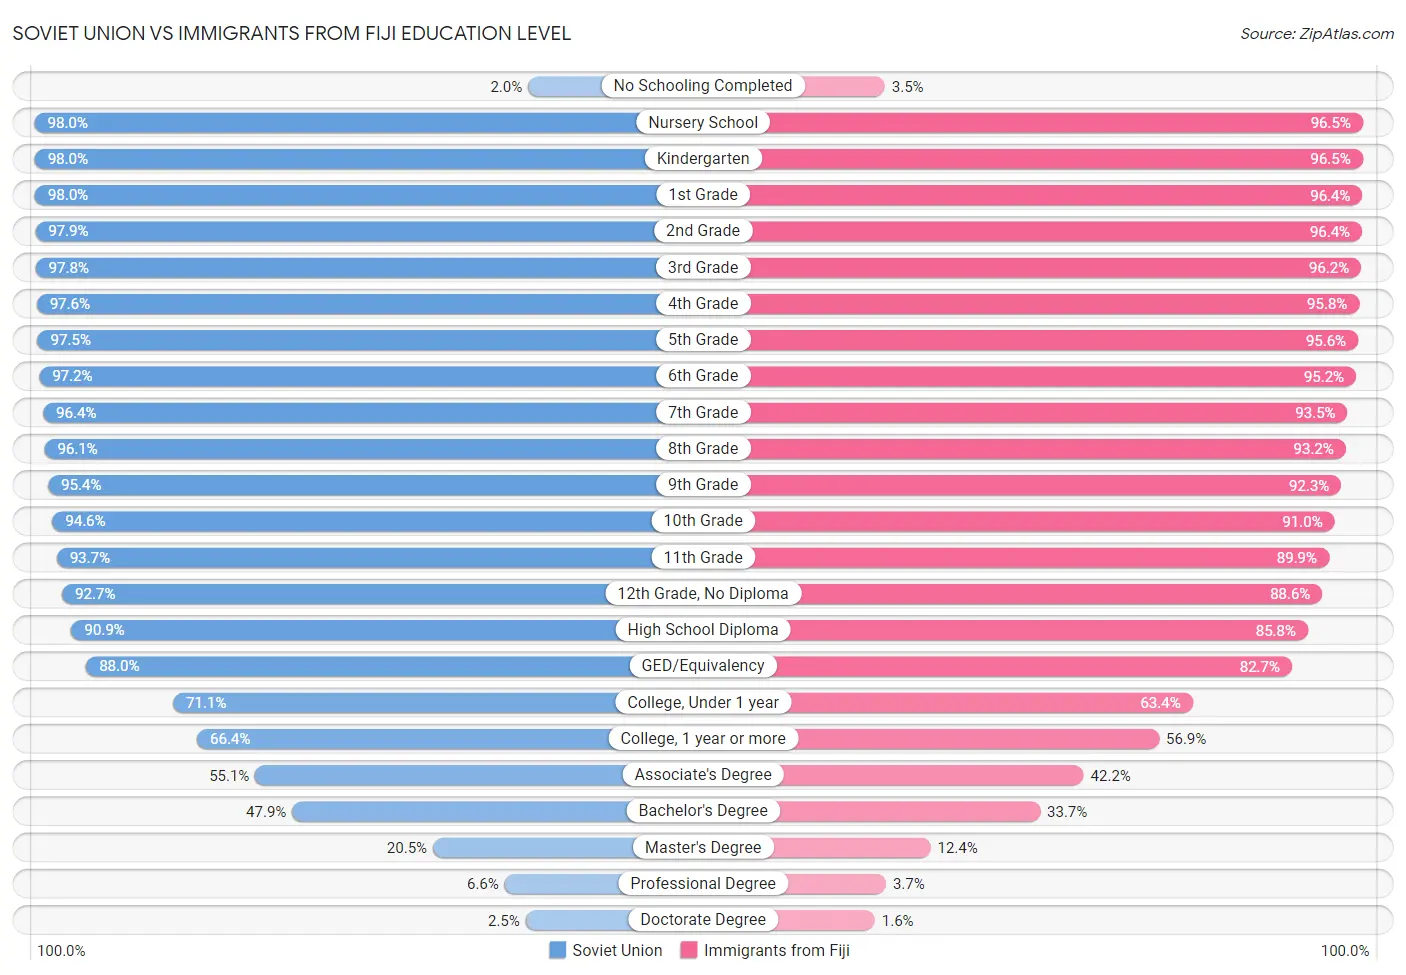 Soviet Union vs Immigrants from Fiji Education Level